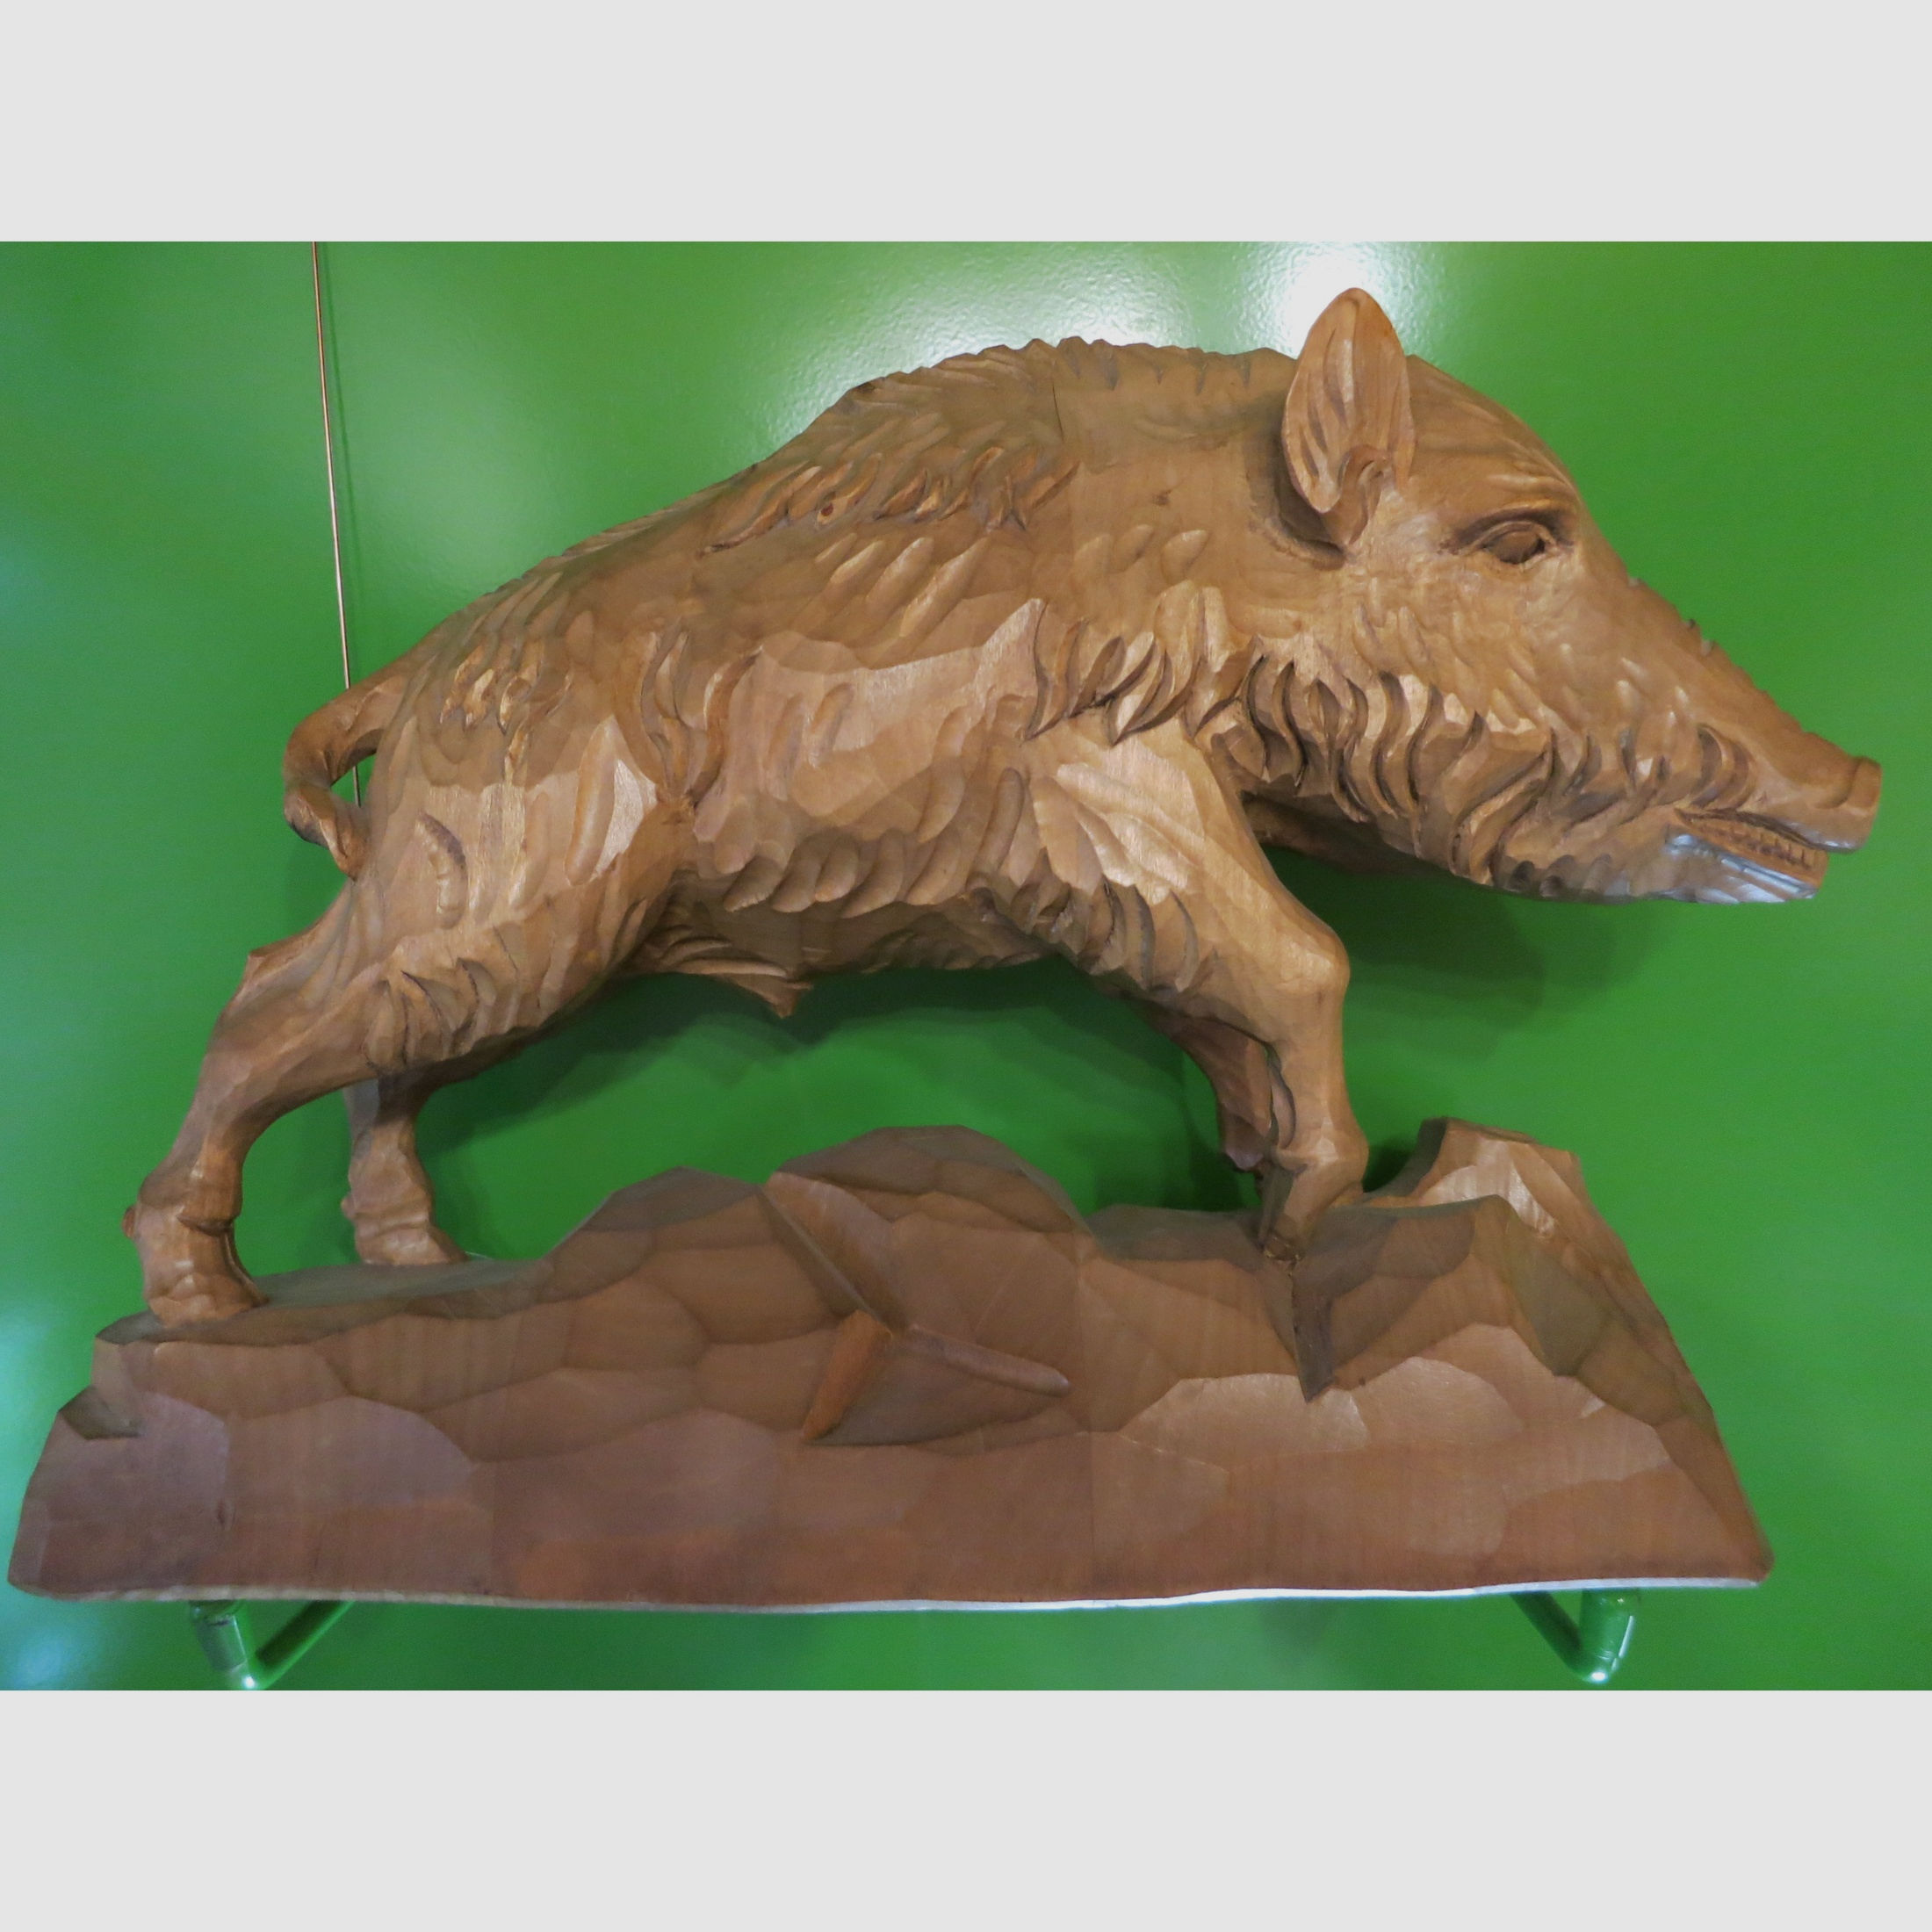 Holzschnitzerei "Wildschwein" Keiler 30 x 23 cm, handgeschnitzte Holzfigur